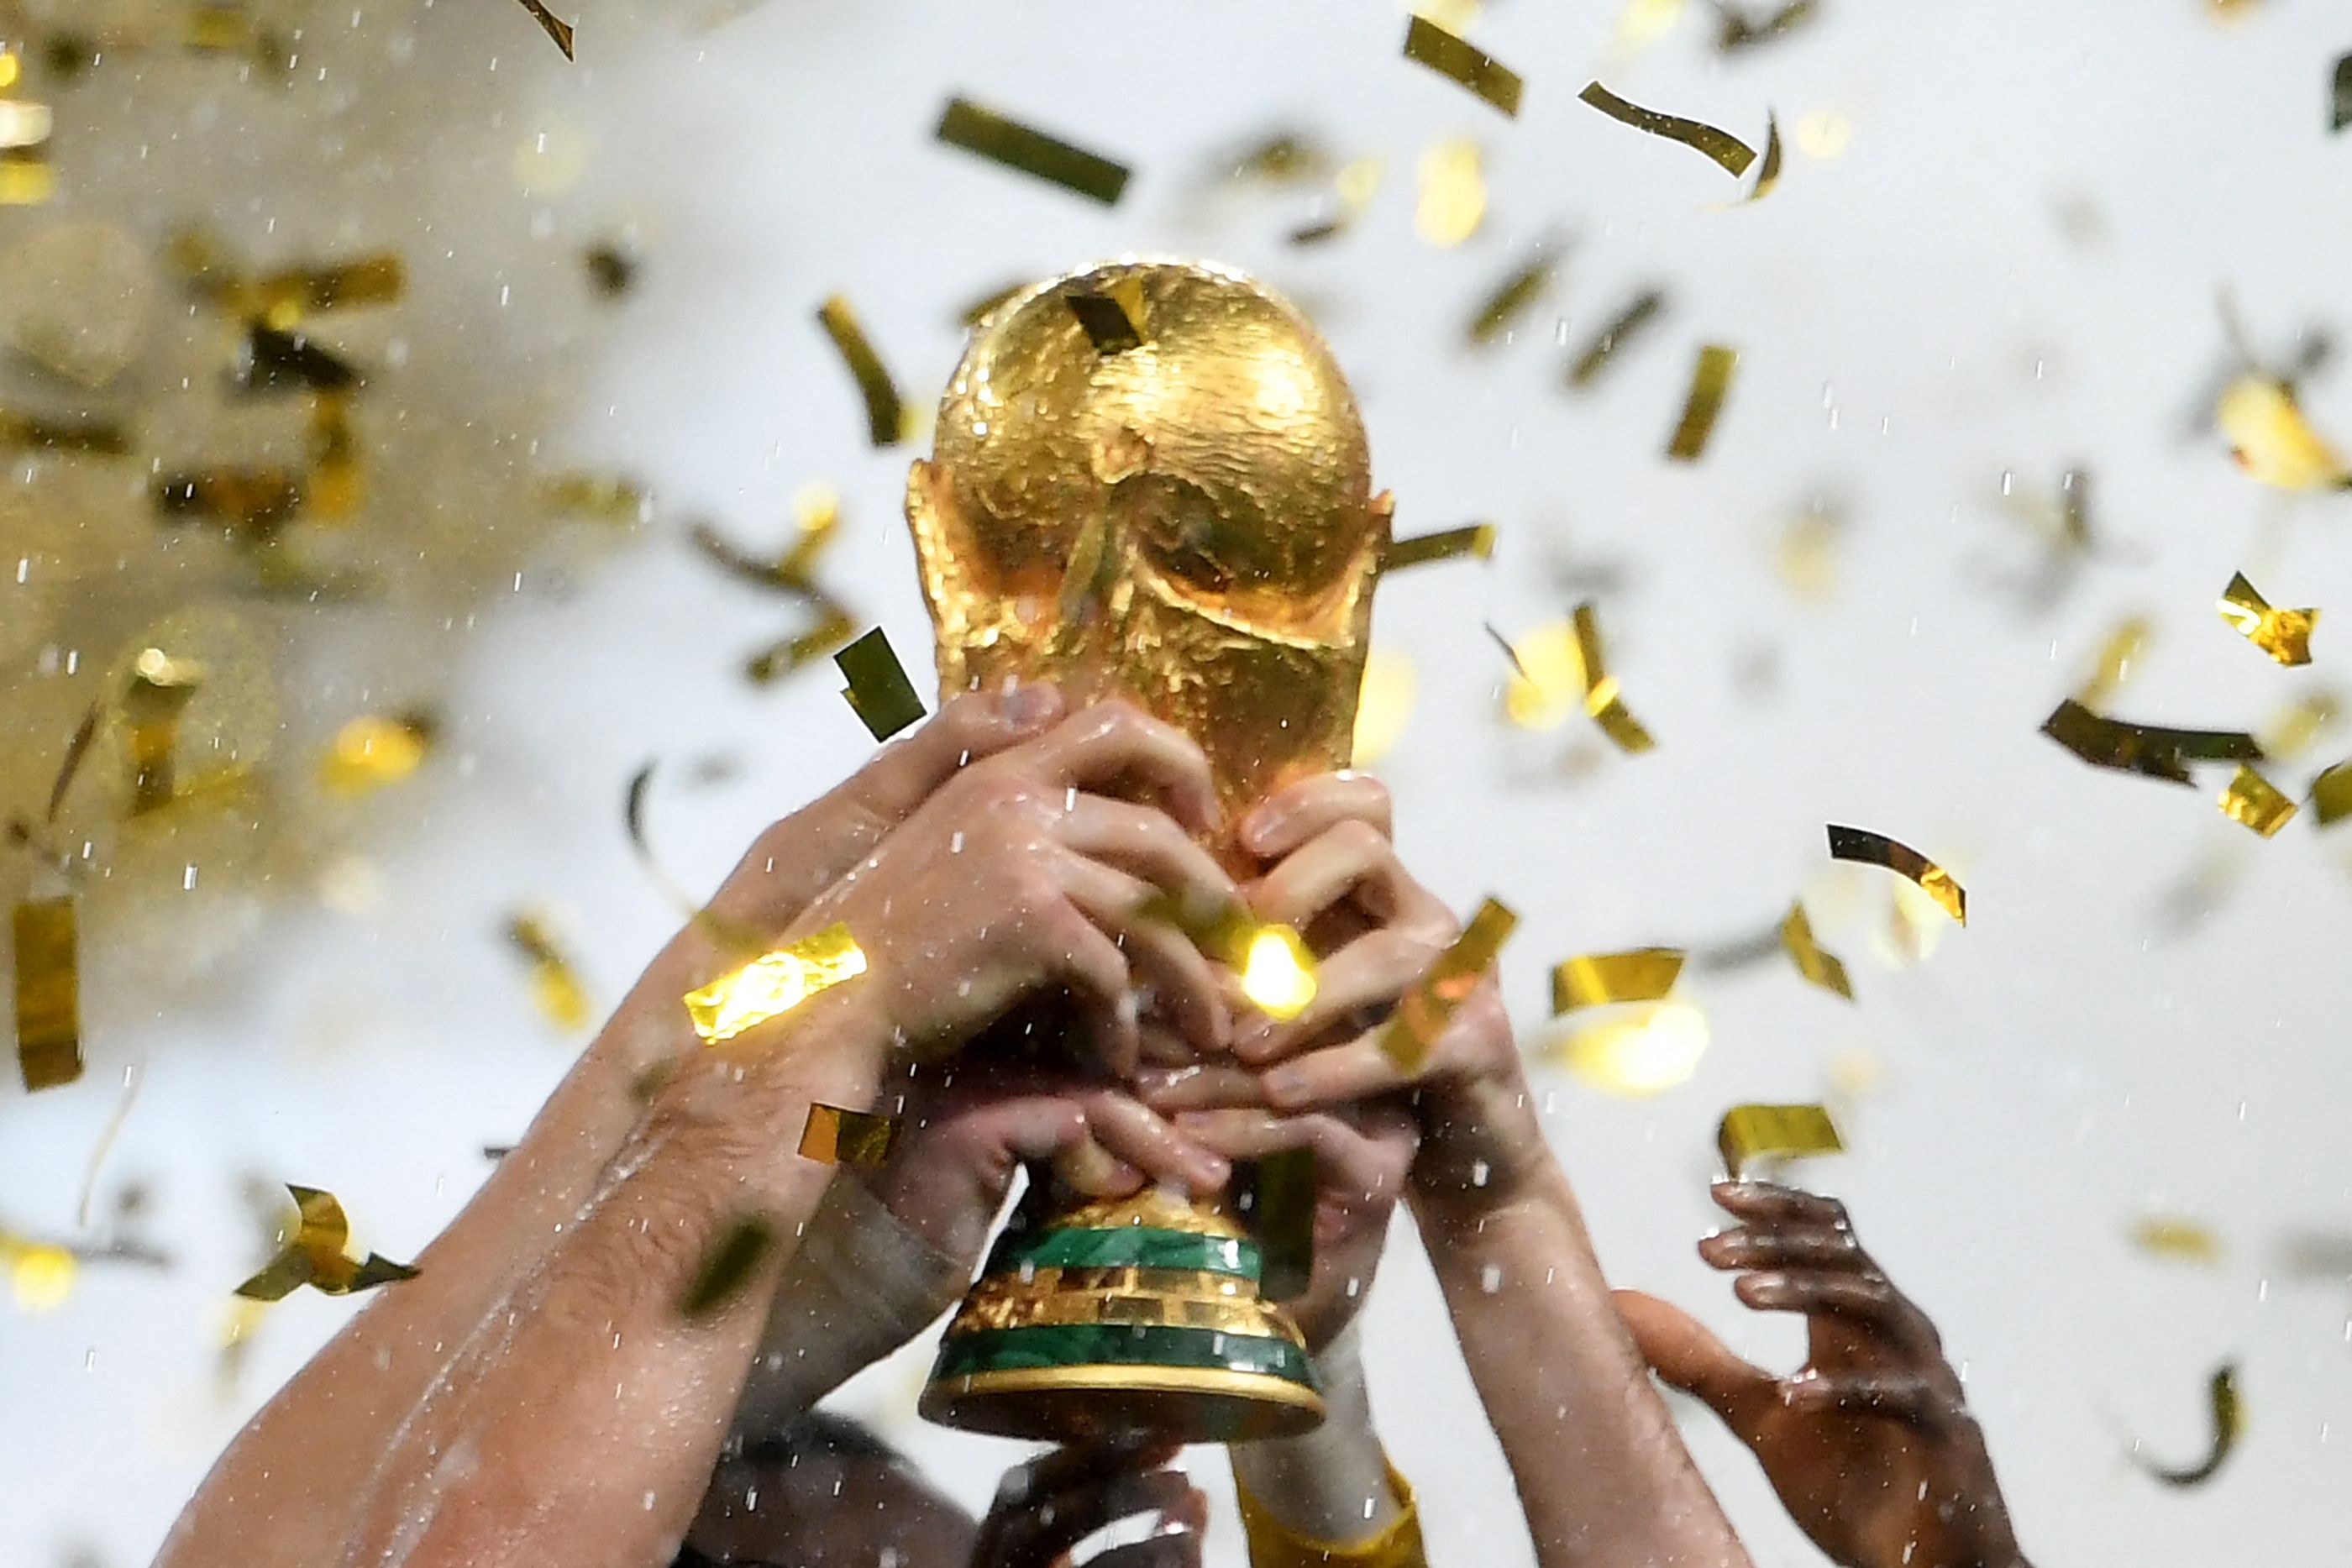 La Copa del Mundo de la Fifa dará inicio el próximo fin de semana. (Foto Prensa Libre: Hemeroteca)